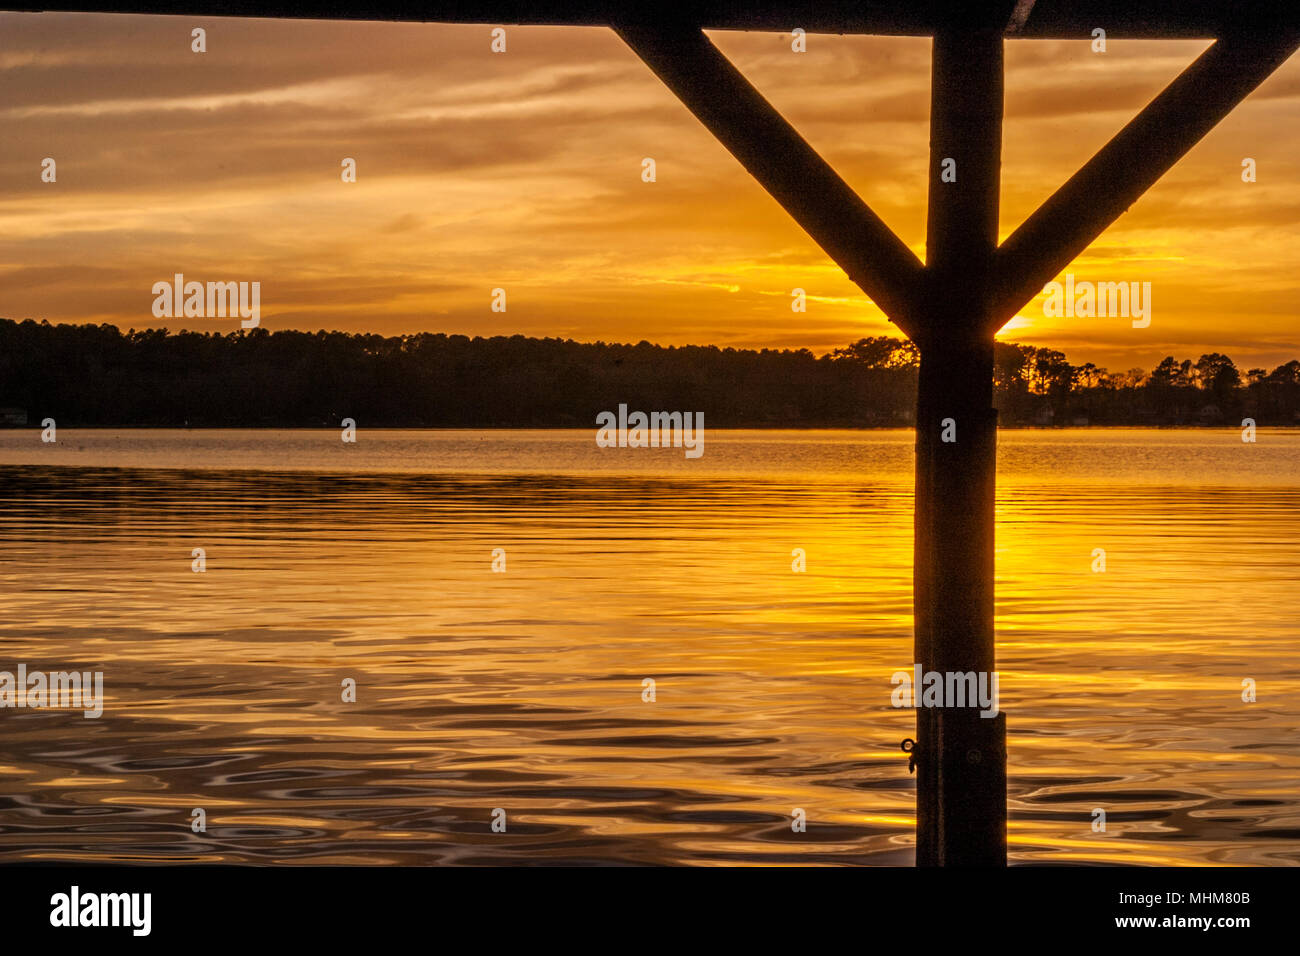 Sunset on Houston County lake, near Crockett, Texas. Stock Photo